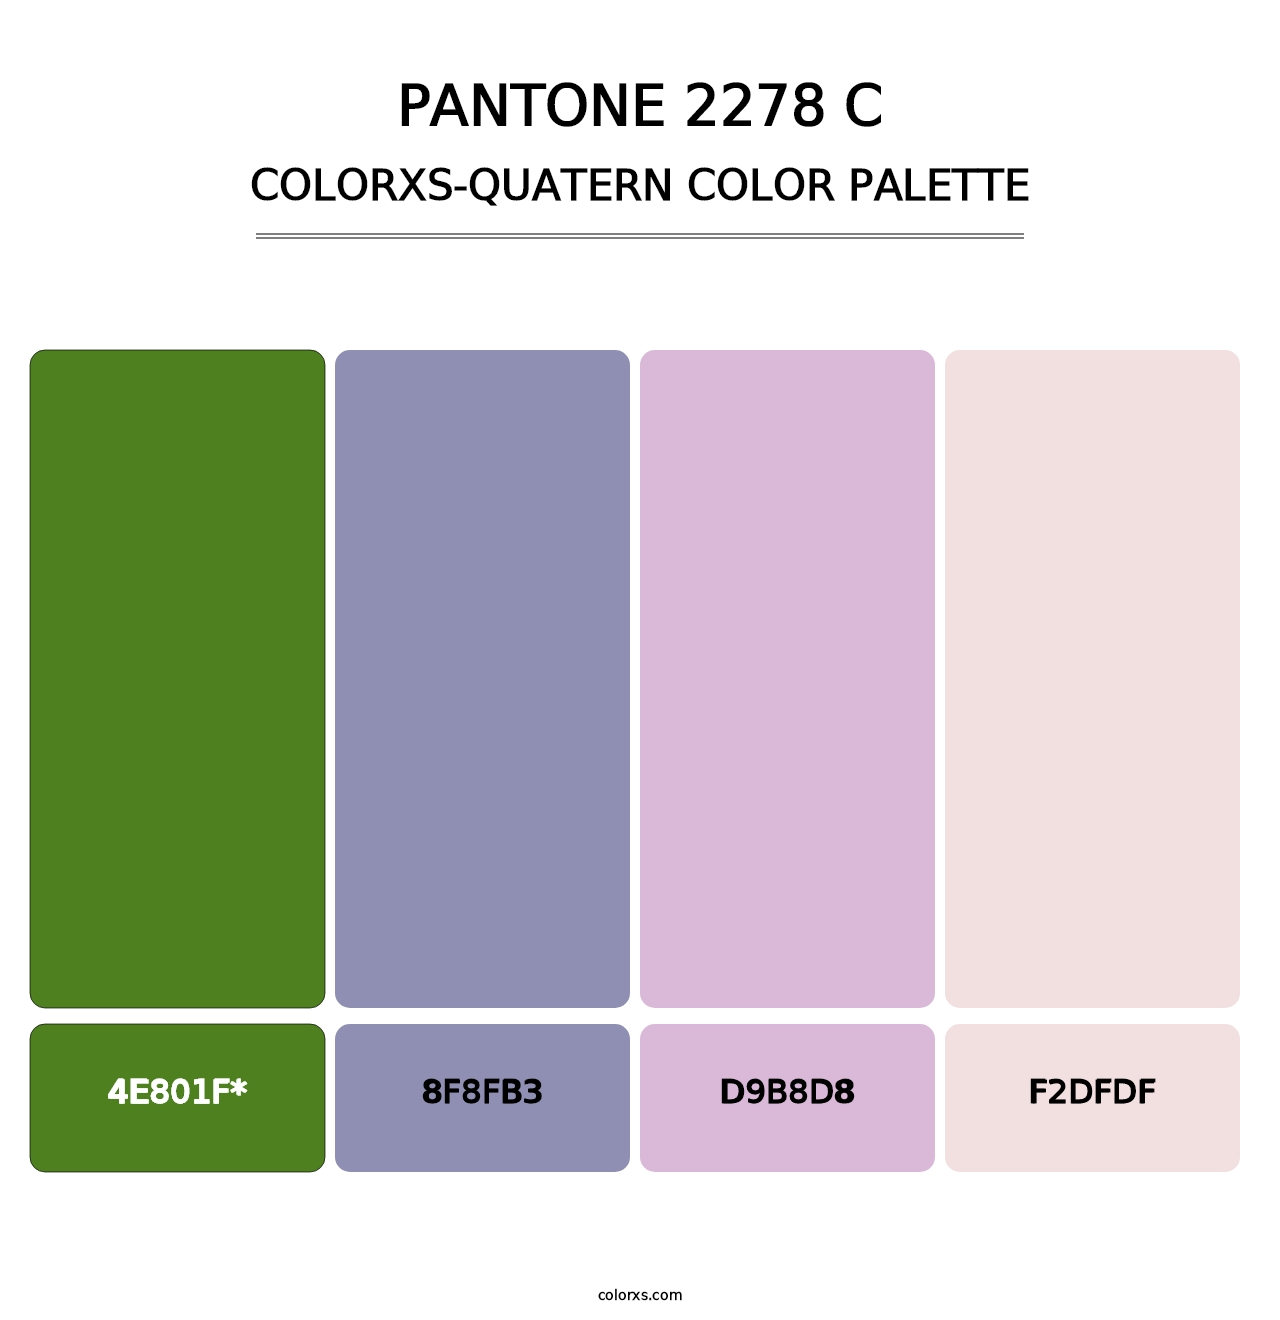 PANTONE 2278 C - Colorxs Quatern Palette